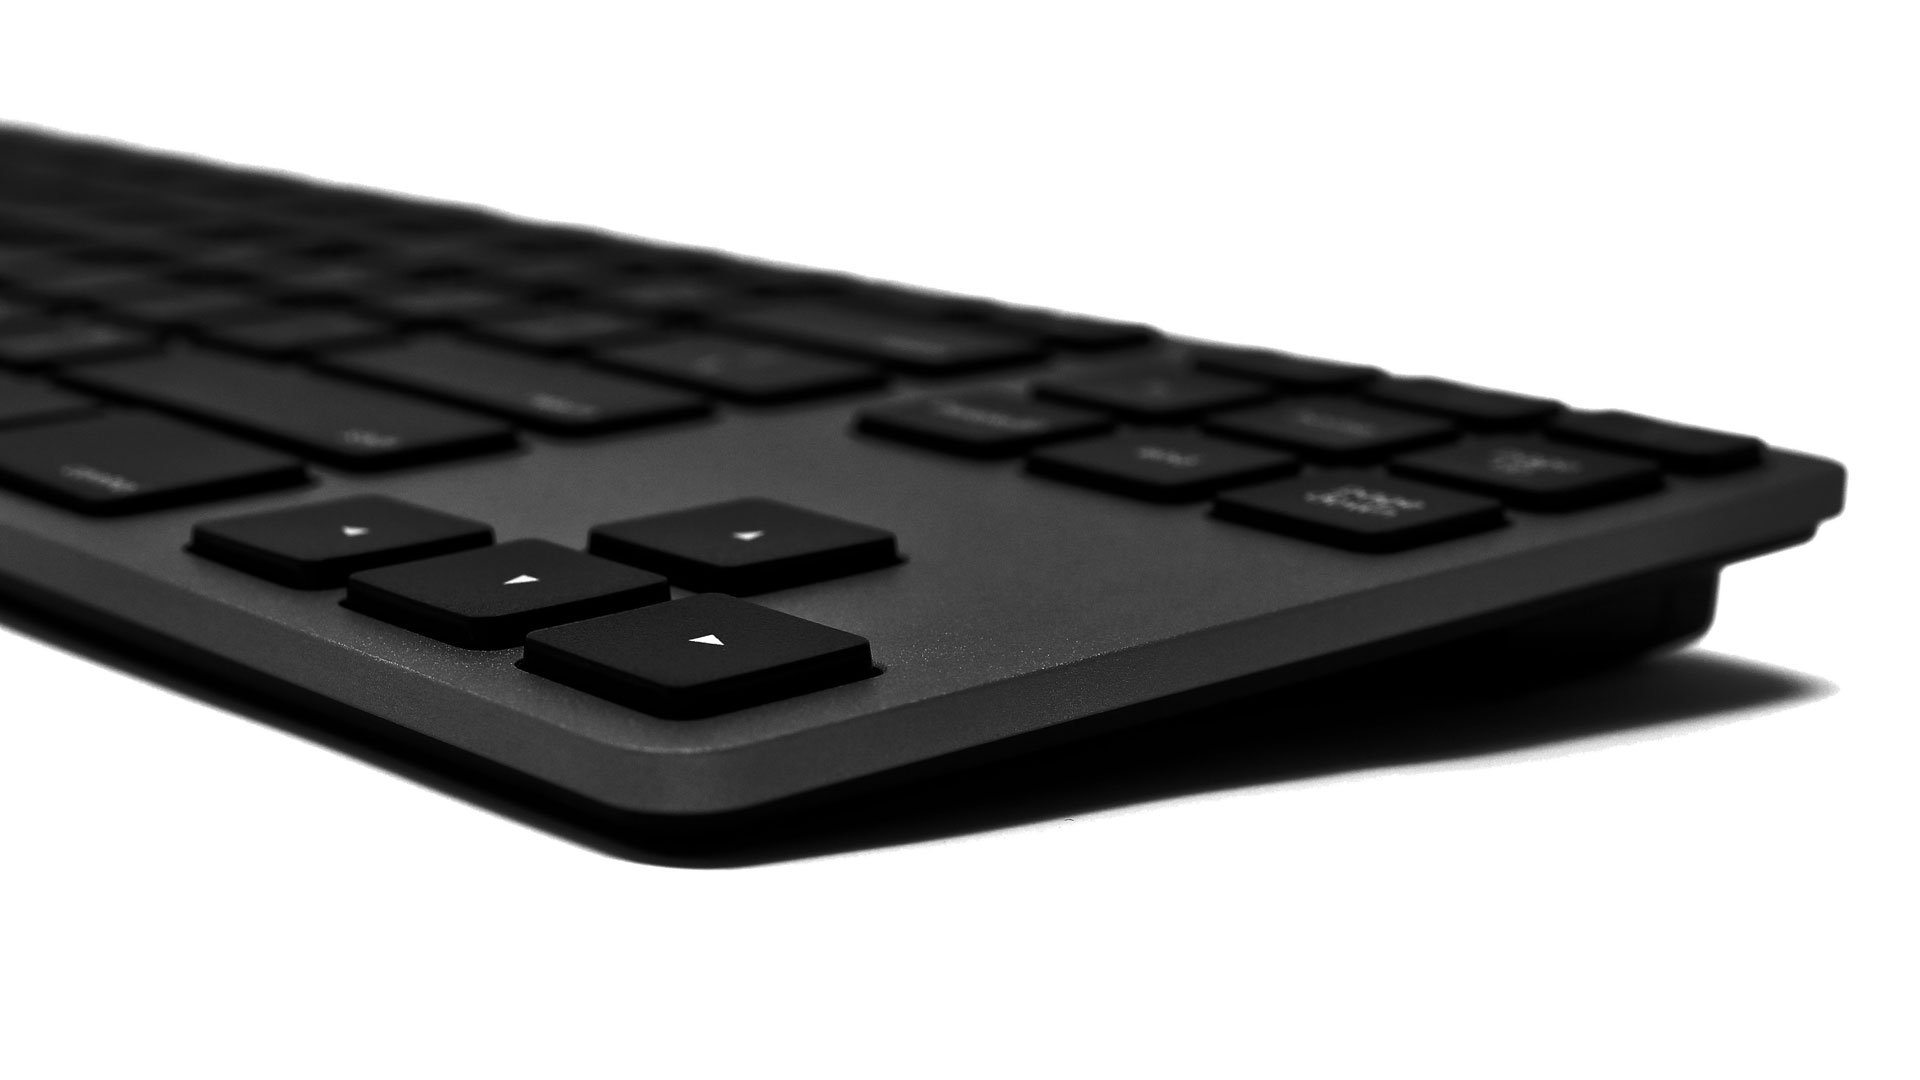 Matias Aluminum Tenkeyless Tastatur ohne Ziffernblock für PC Layout Deutsch - Schwarz